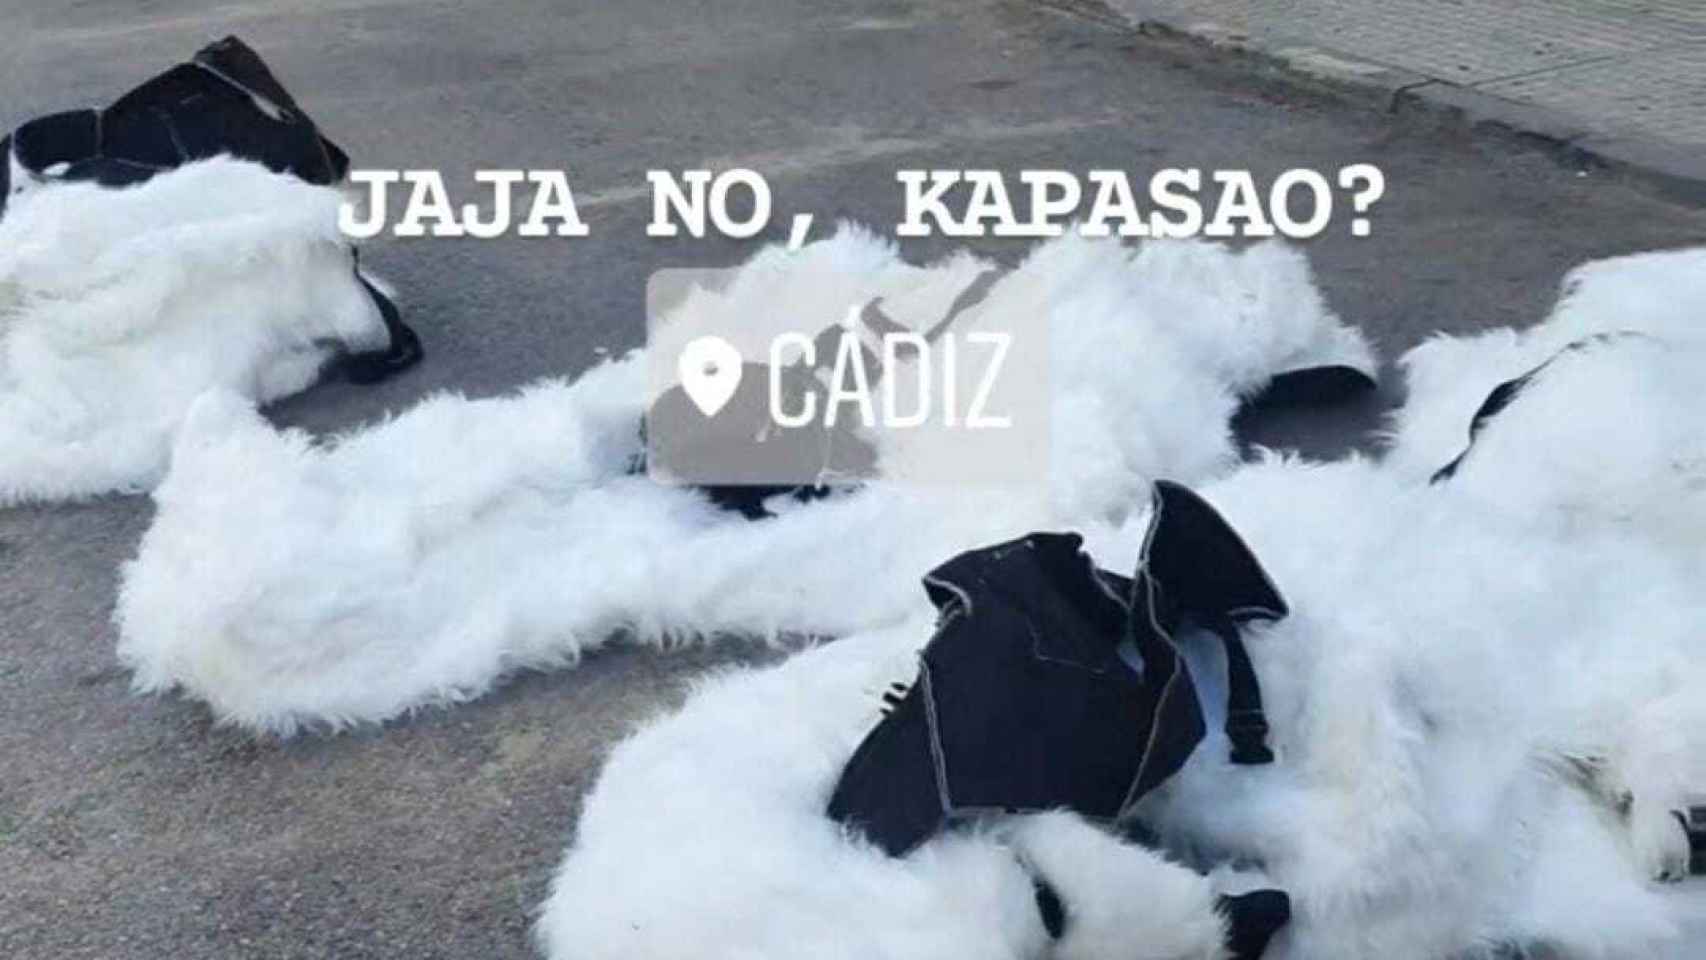 Publicación que compartieron en Instagram de los trajes de oso polar de la cabalgata de Cádiz.